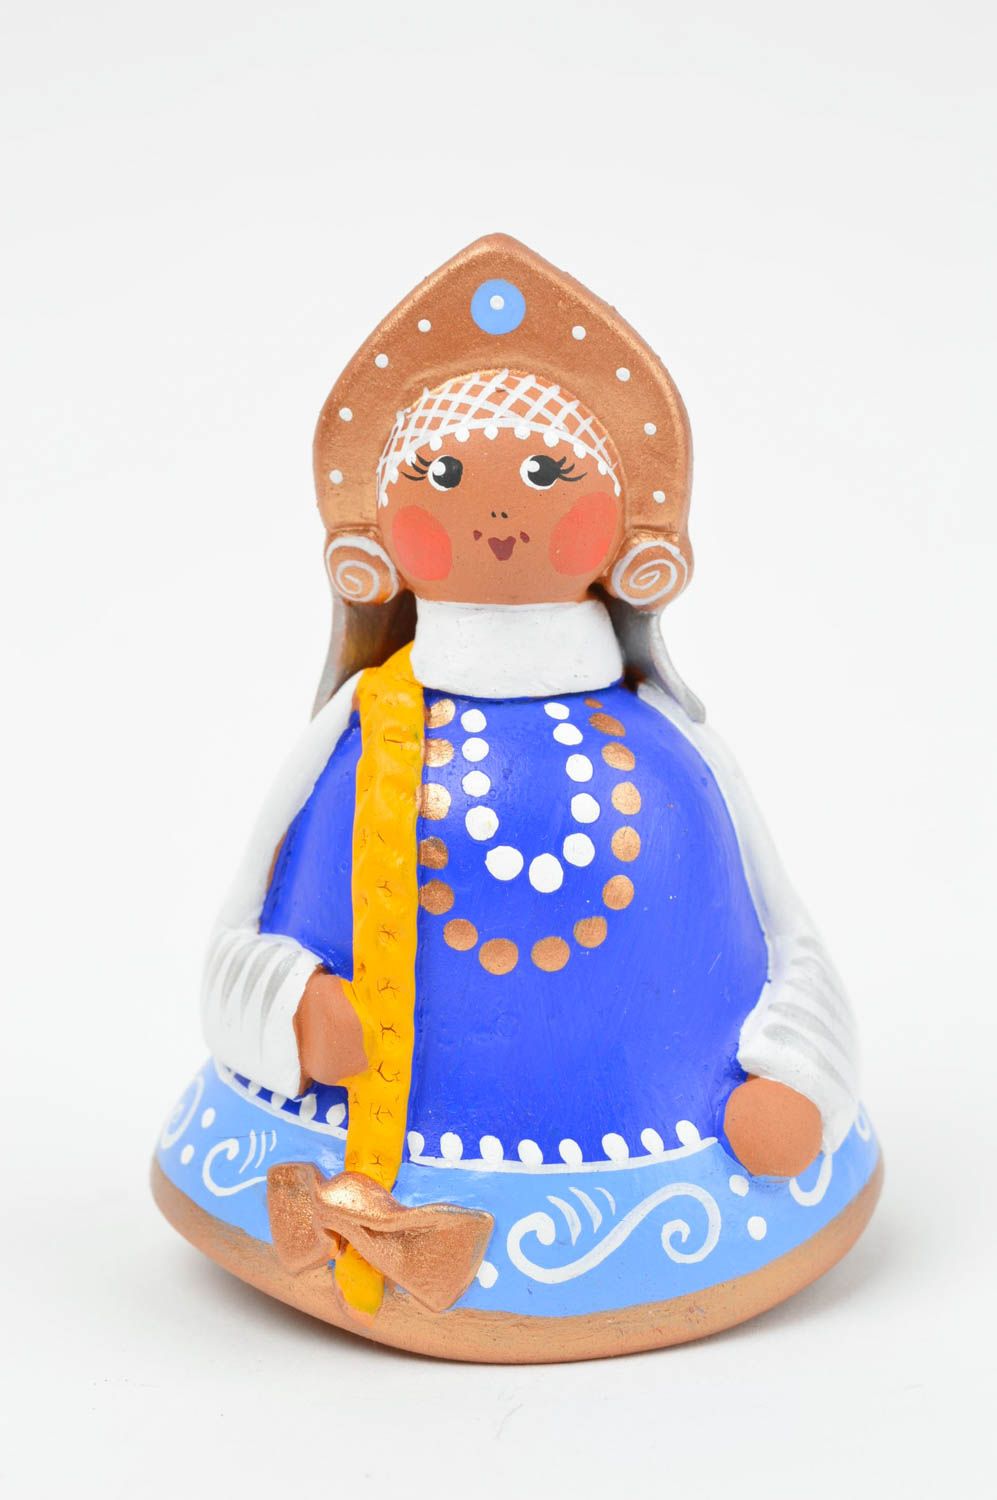 Синий глиняный колокольчик в виде девицы ручной работы расписанный красками фото 2